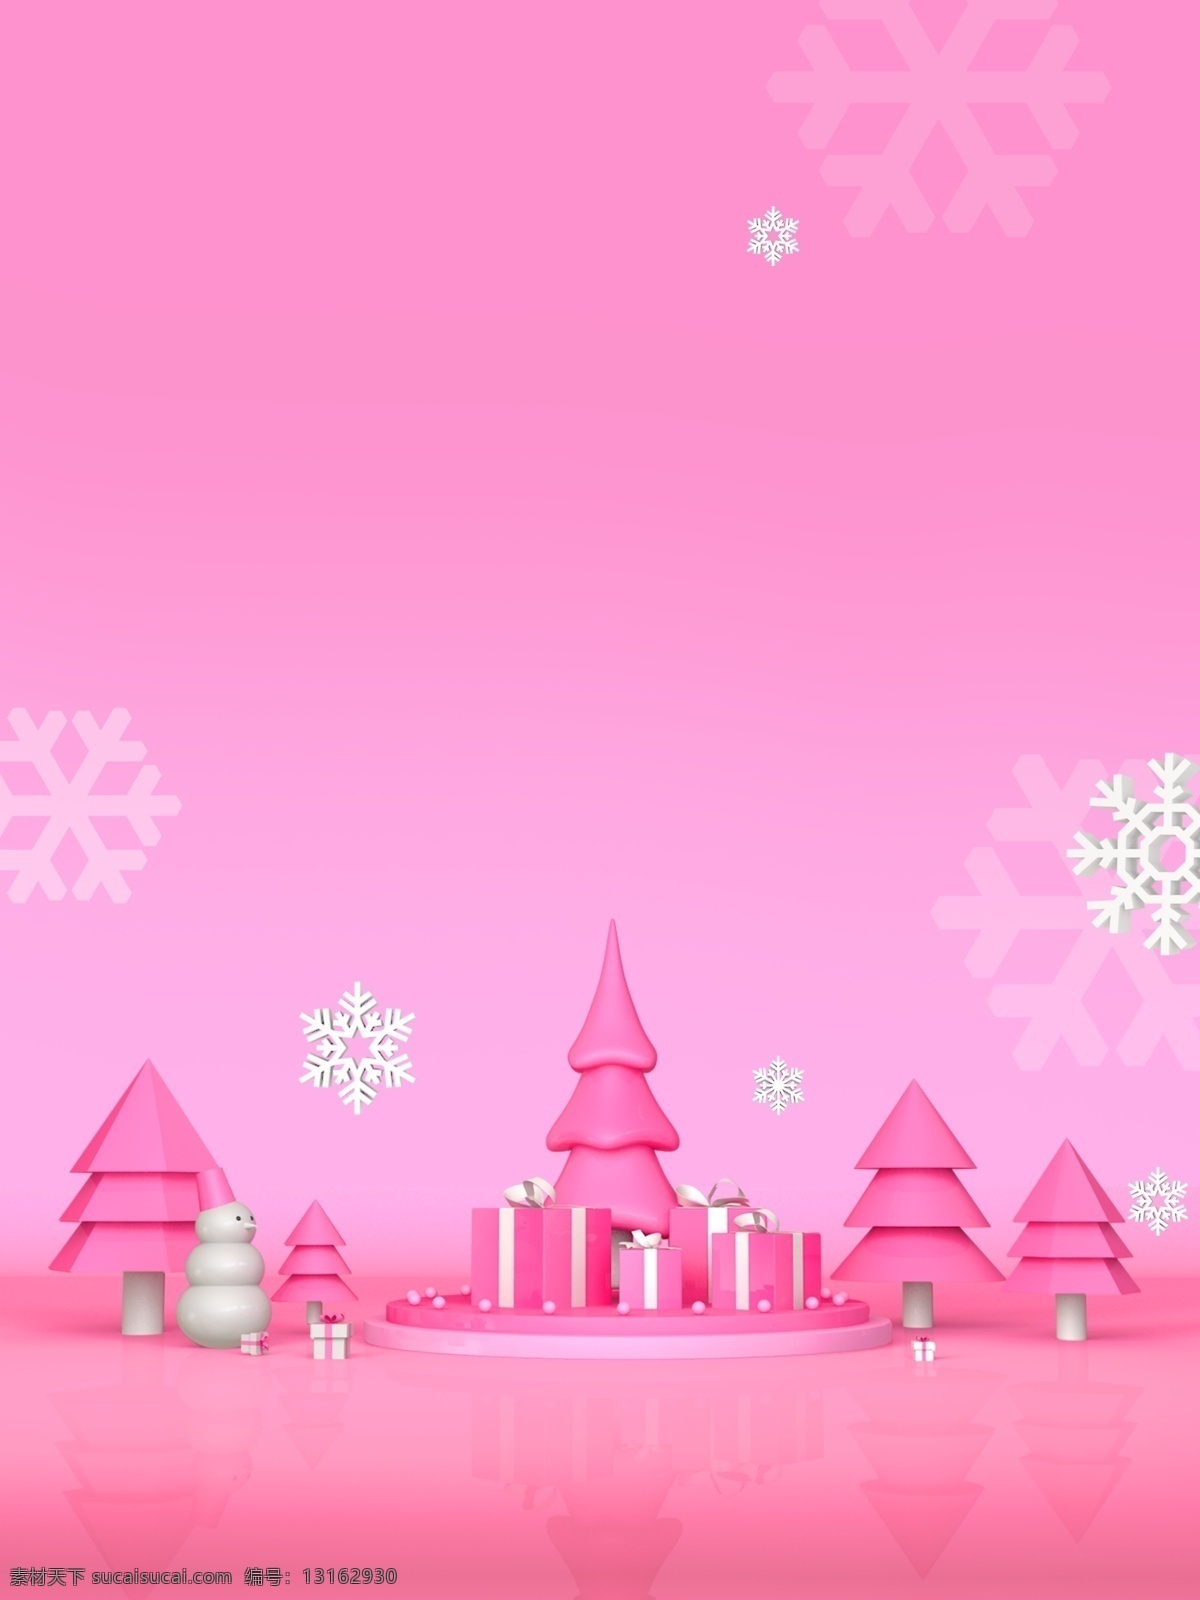 简约 粉色 圣诞 城堡 促销 背景 粉色背景 雪花 圣诞节 圣诞背景 圣诞快乐 新年背景 节日背景 圣诞节dm单 圣诞大促 圣诞促销展板 圣诞节活动